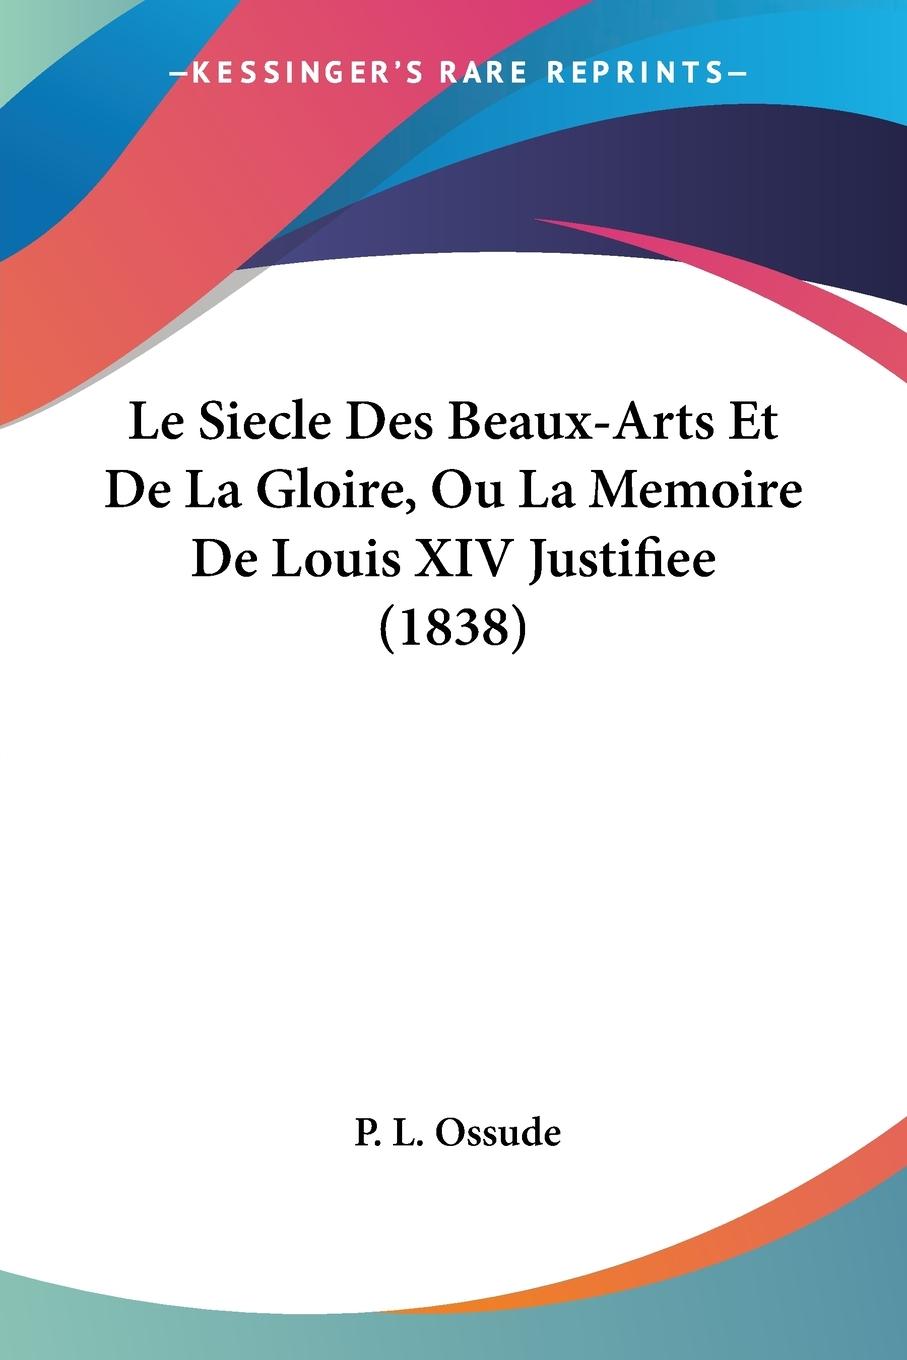 Le Siecle Des Beaux-Arts Et De La Gloire, Ou La Memoire De Louis XIV Justifiee (1838) - Ossude, P. L.